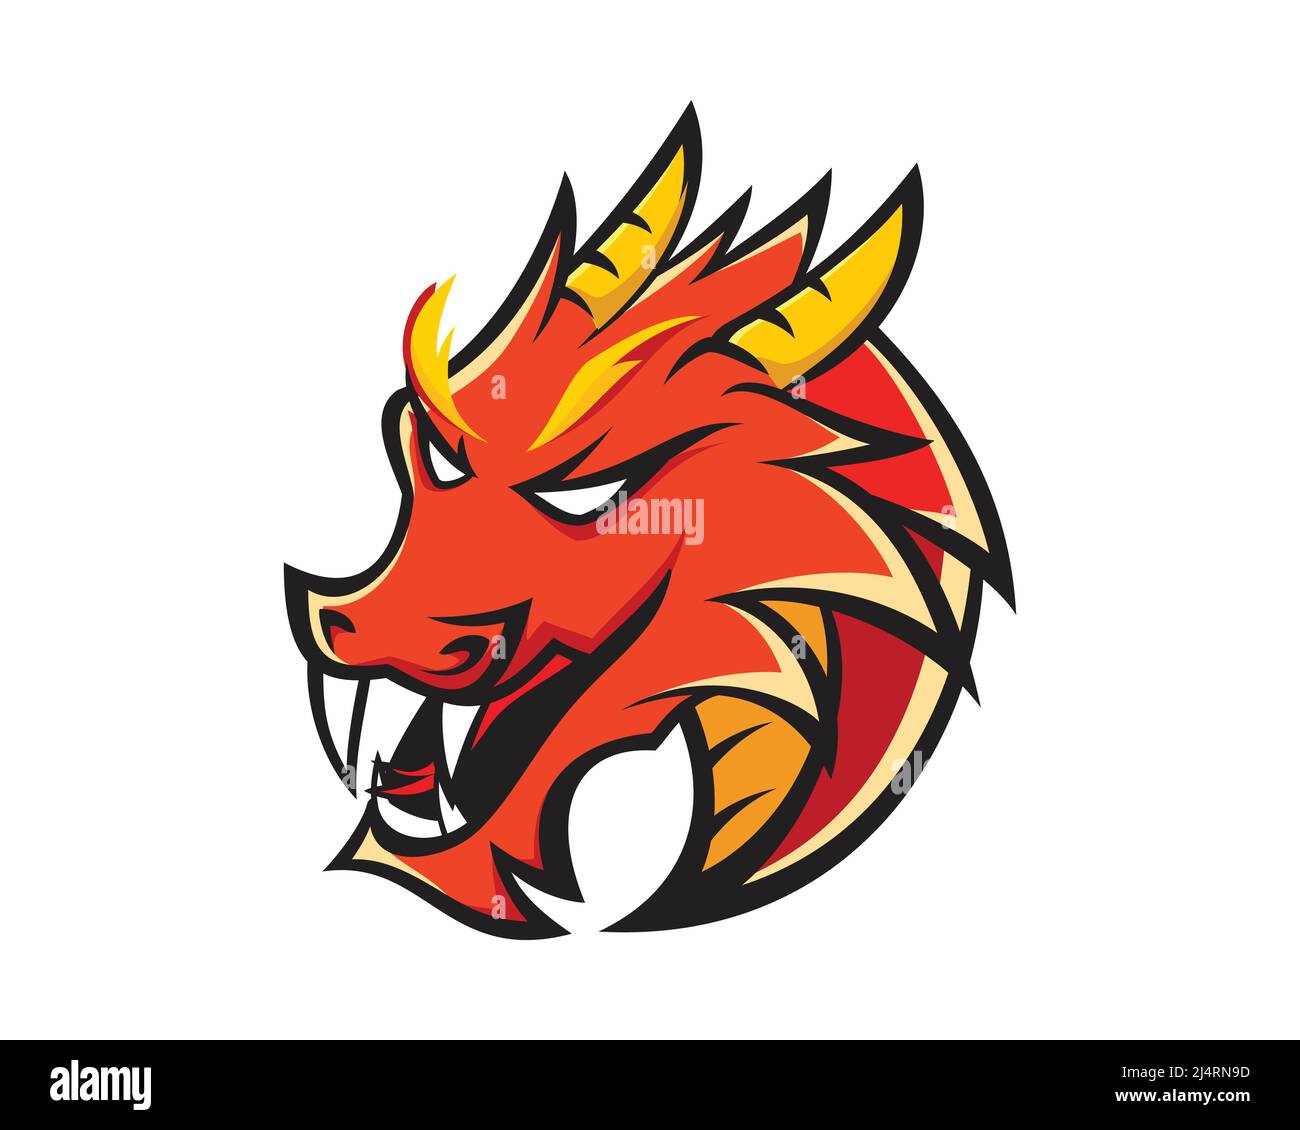 European Red Dragon Head Mascot and Emblem Vector Stock Vector